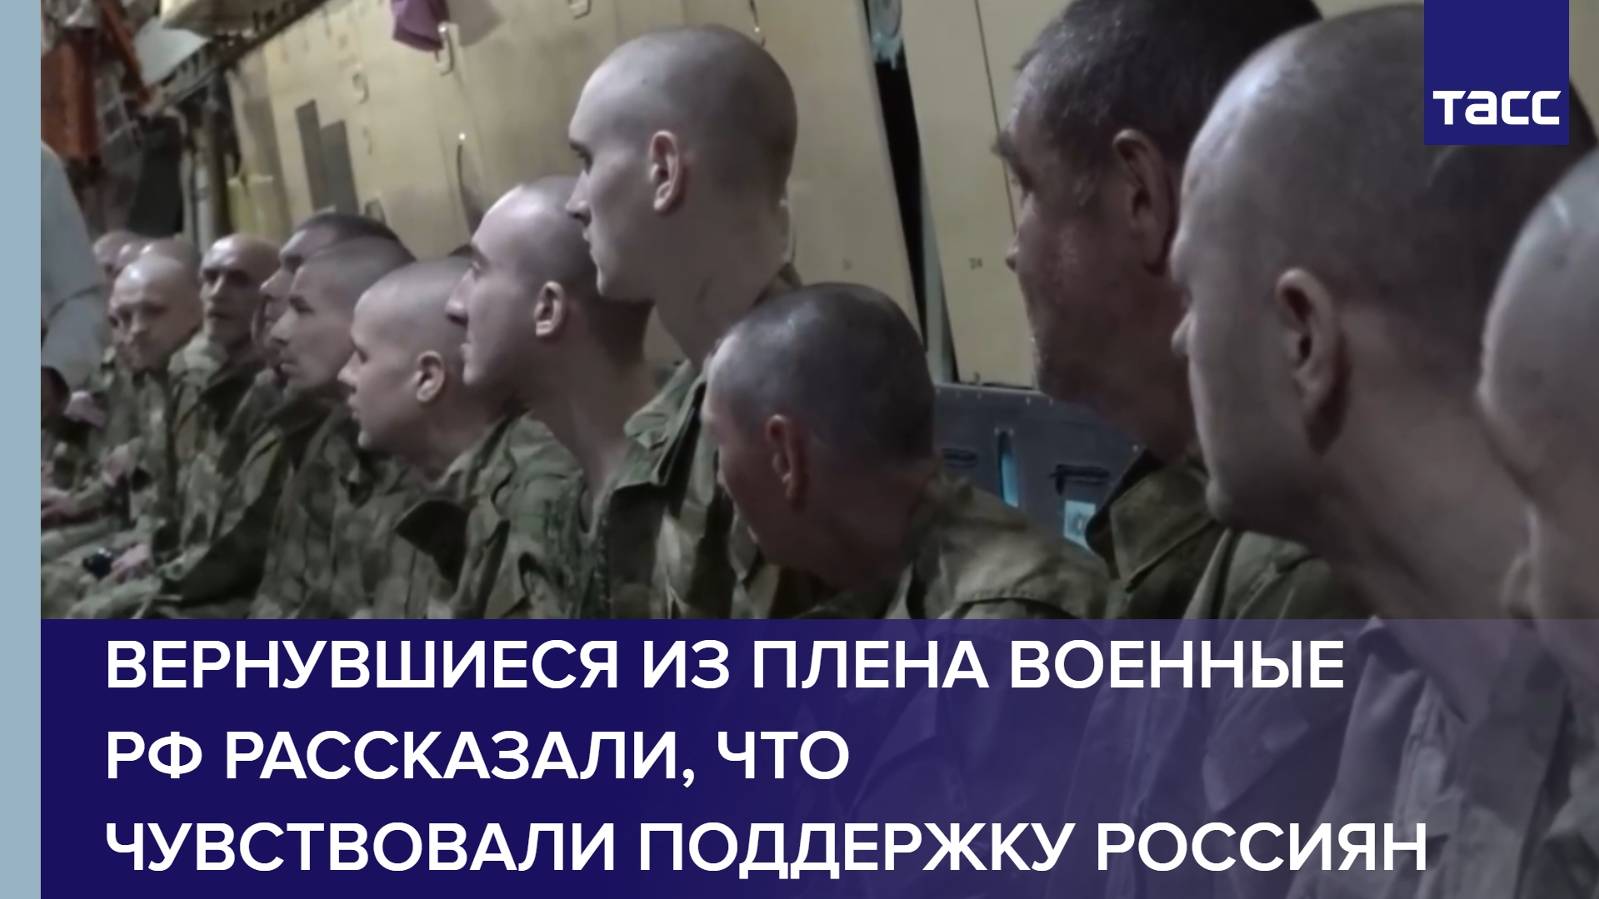 Вернувшиеся из плена военные РФ рассказали, что чувствовали поддержку россиян